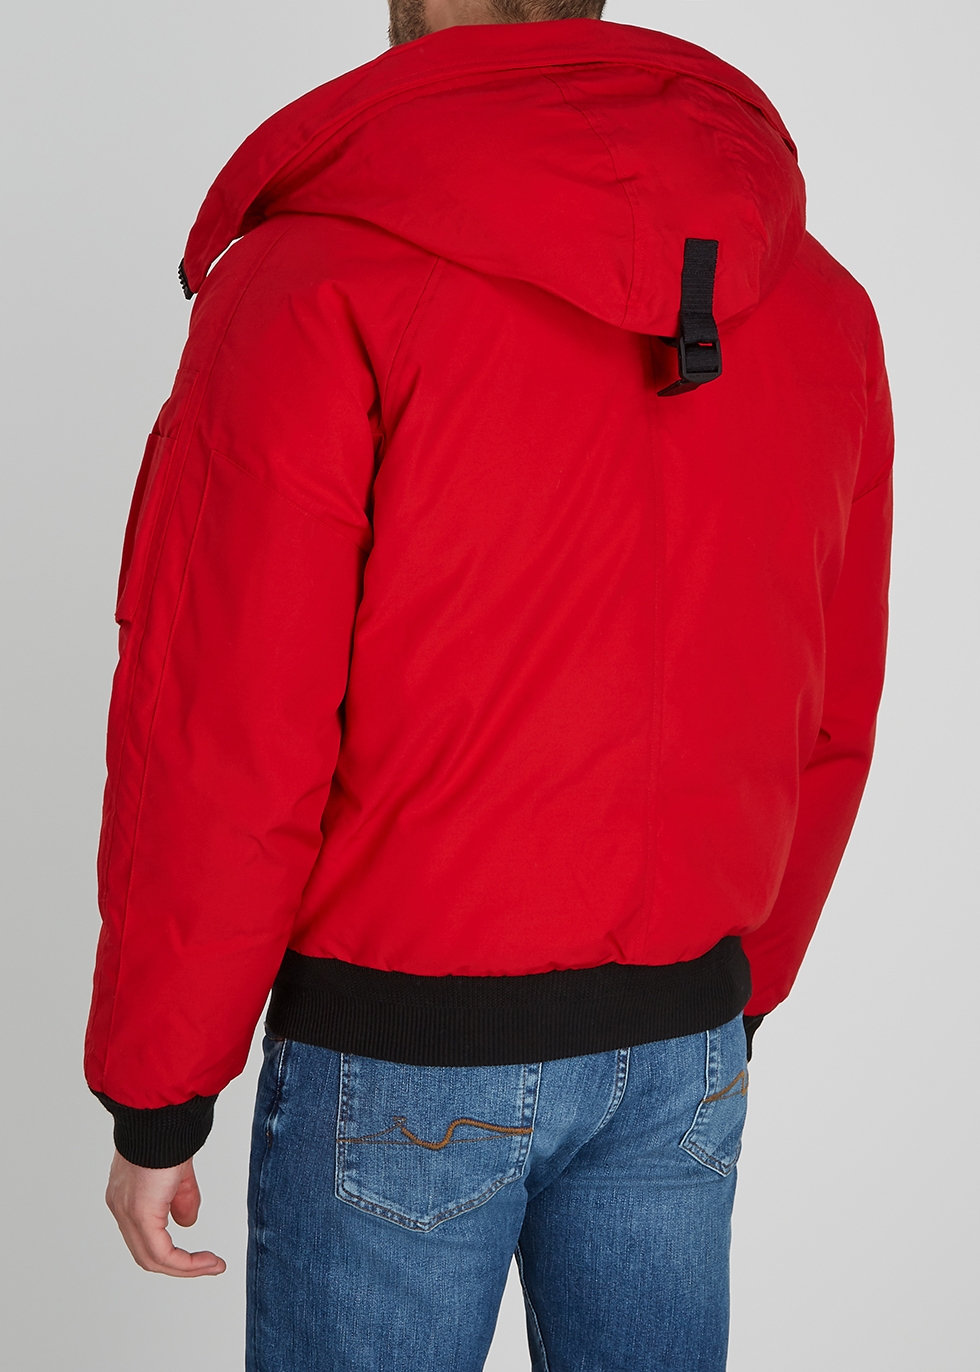 ralph lauren red bomber jacket